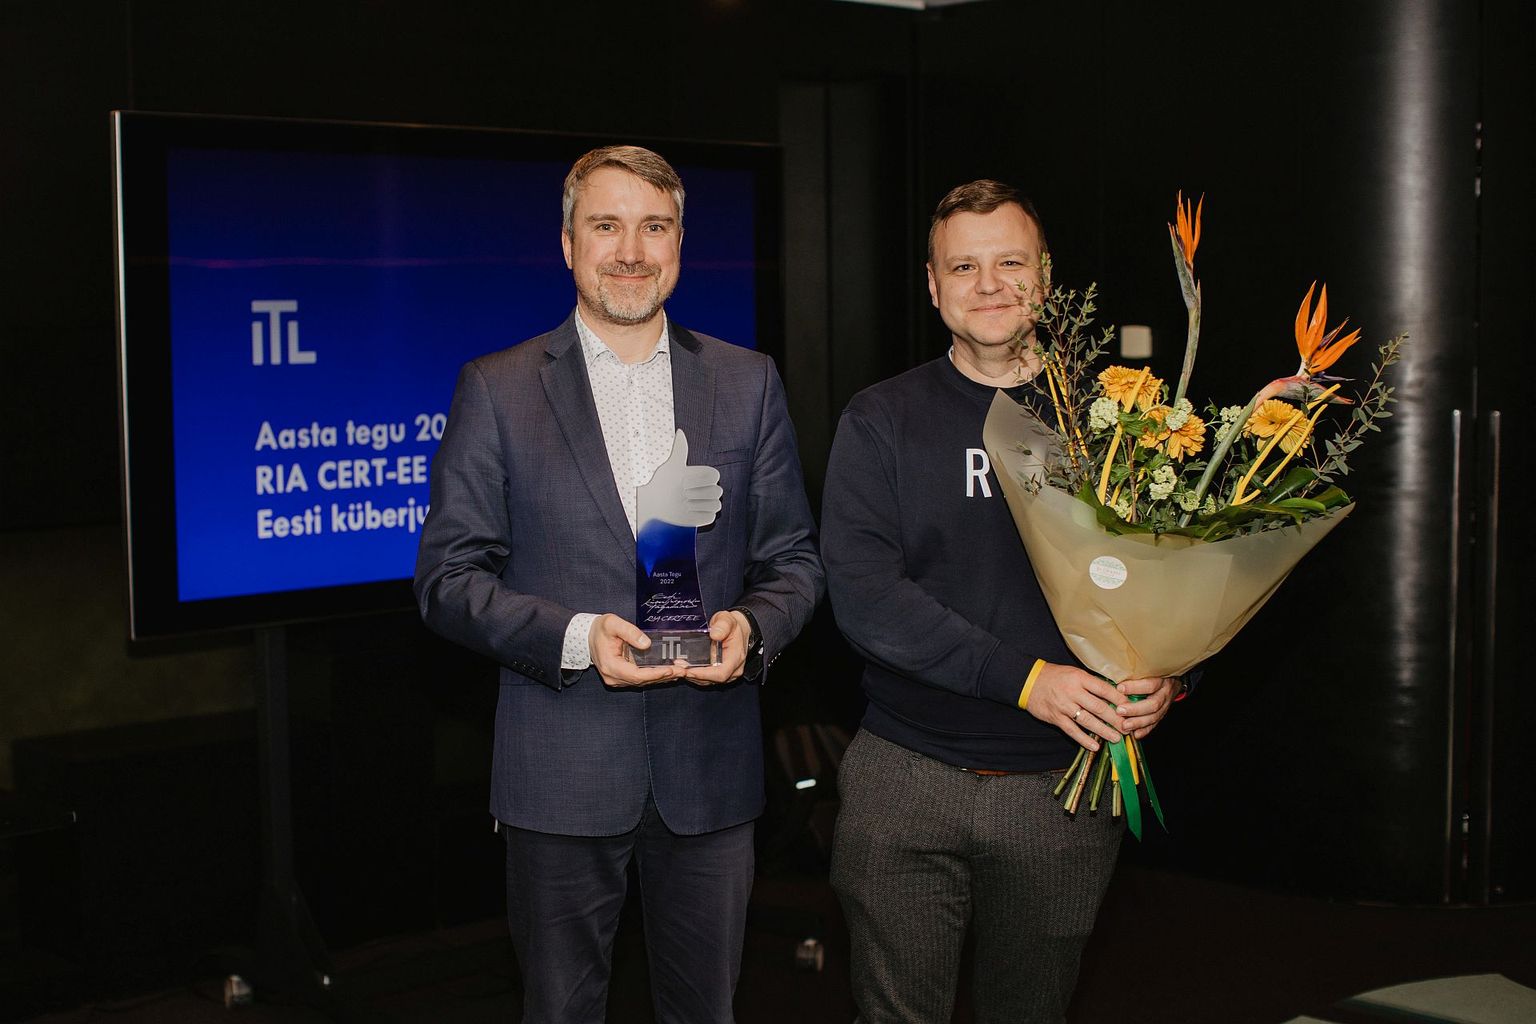 ITL-i Aasta Tegu 2022 auhinna saajad Gert Auväärt ja Tõnu Tammer RIA-st.